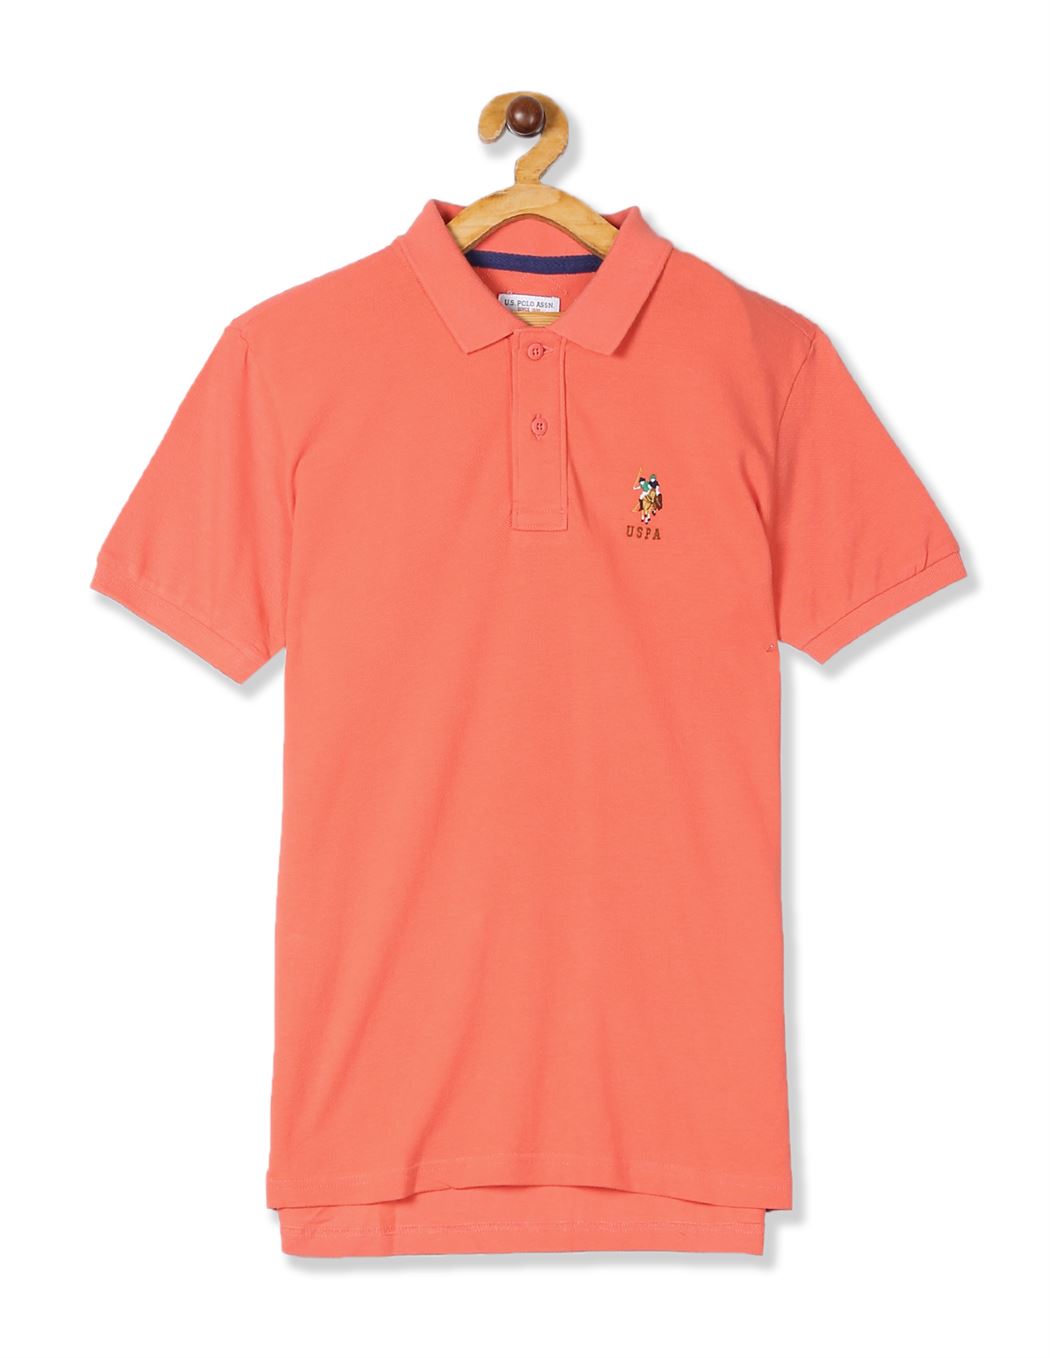 U.S. Polo Assn. Orange Boys Solid Cotton Polo Shirt